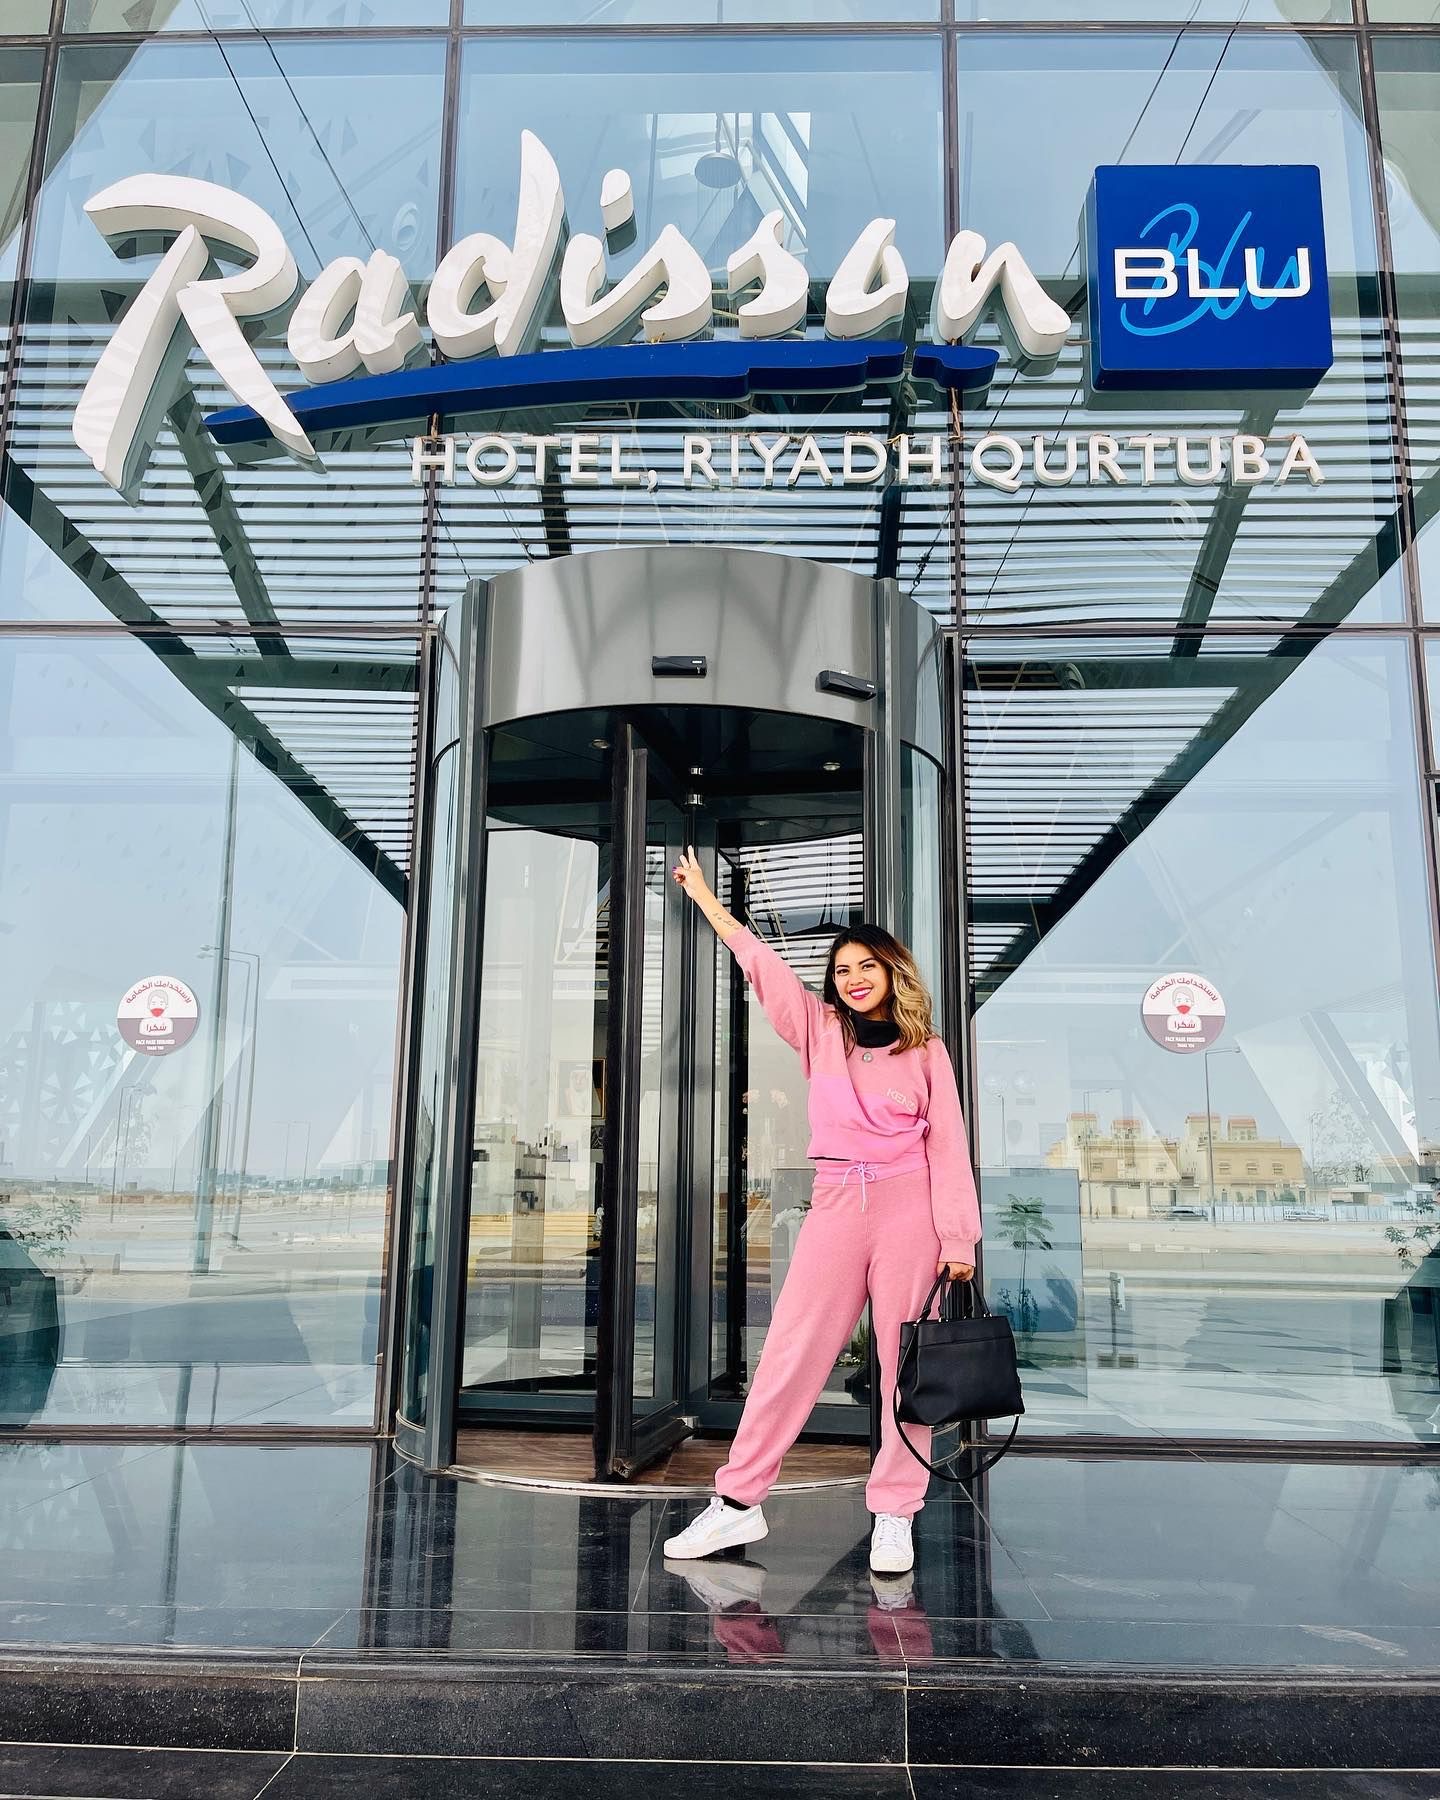 Radisson Blu Hotel, Riyadh Qurtuba Visiting my 171st Country!